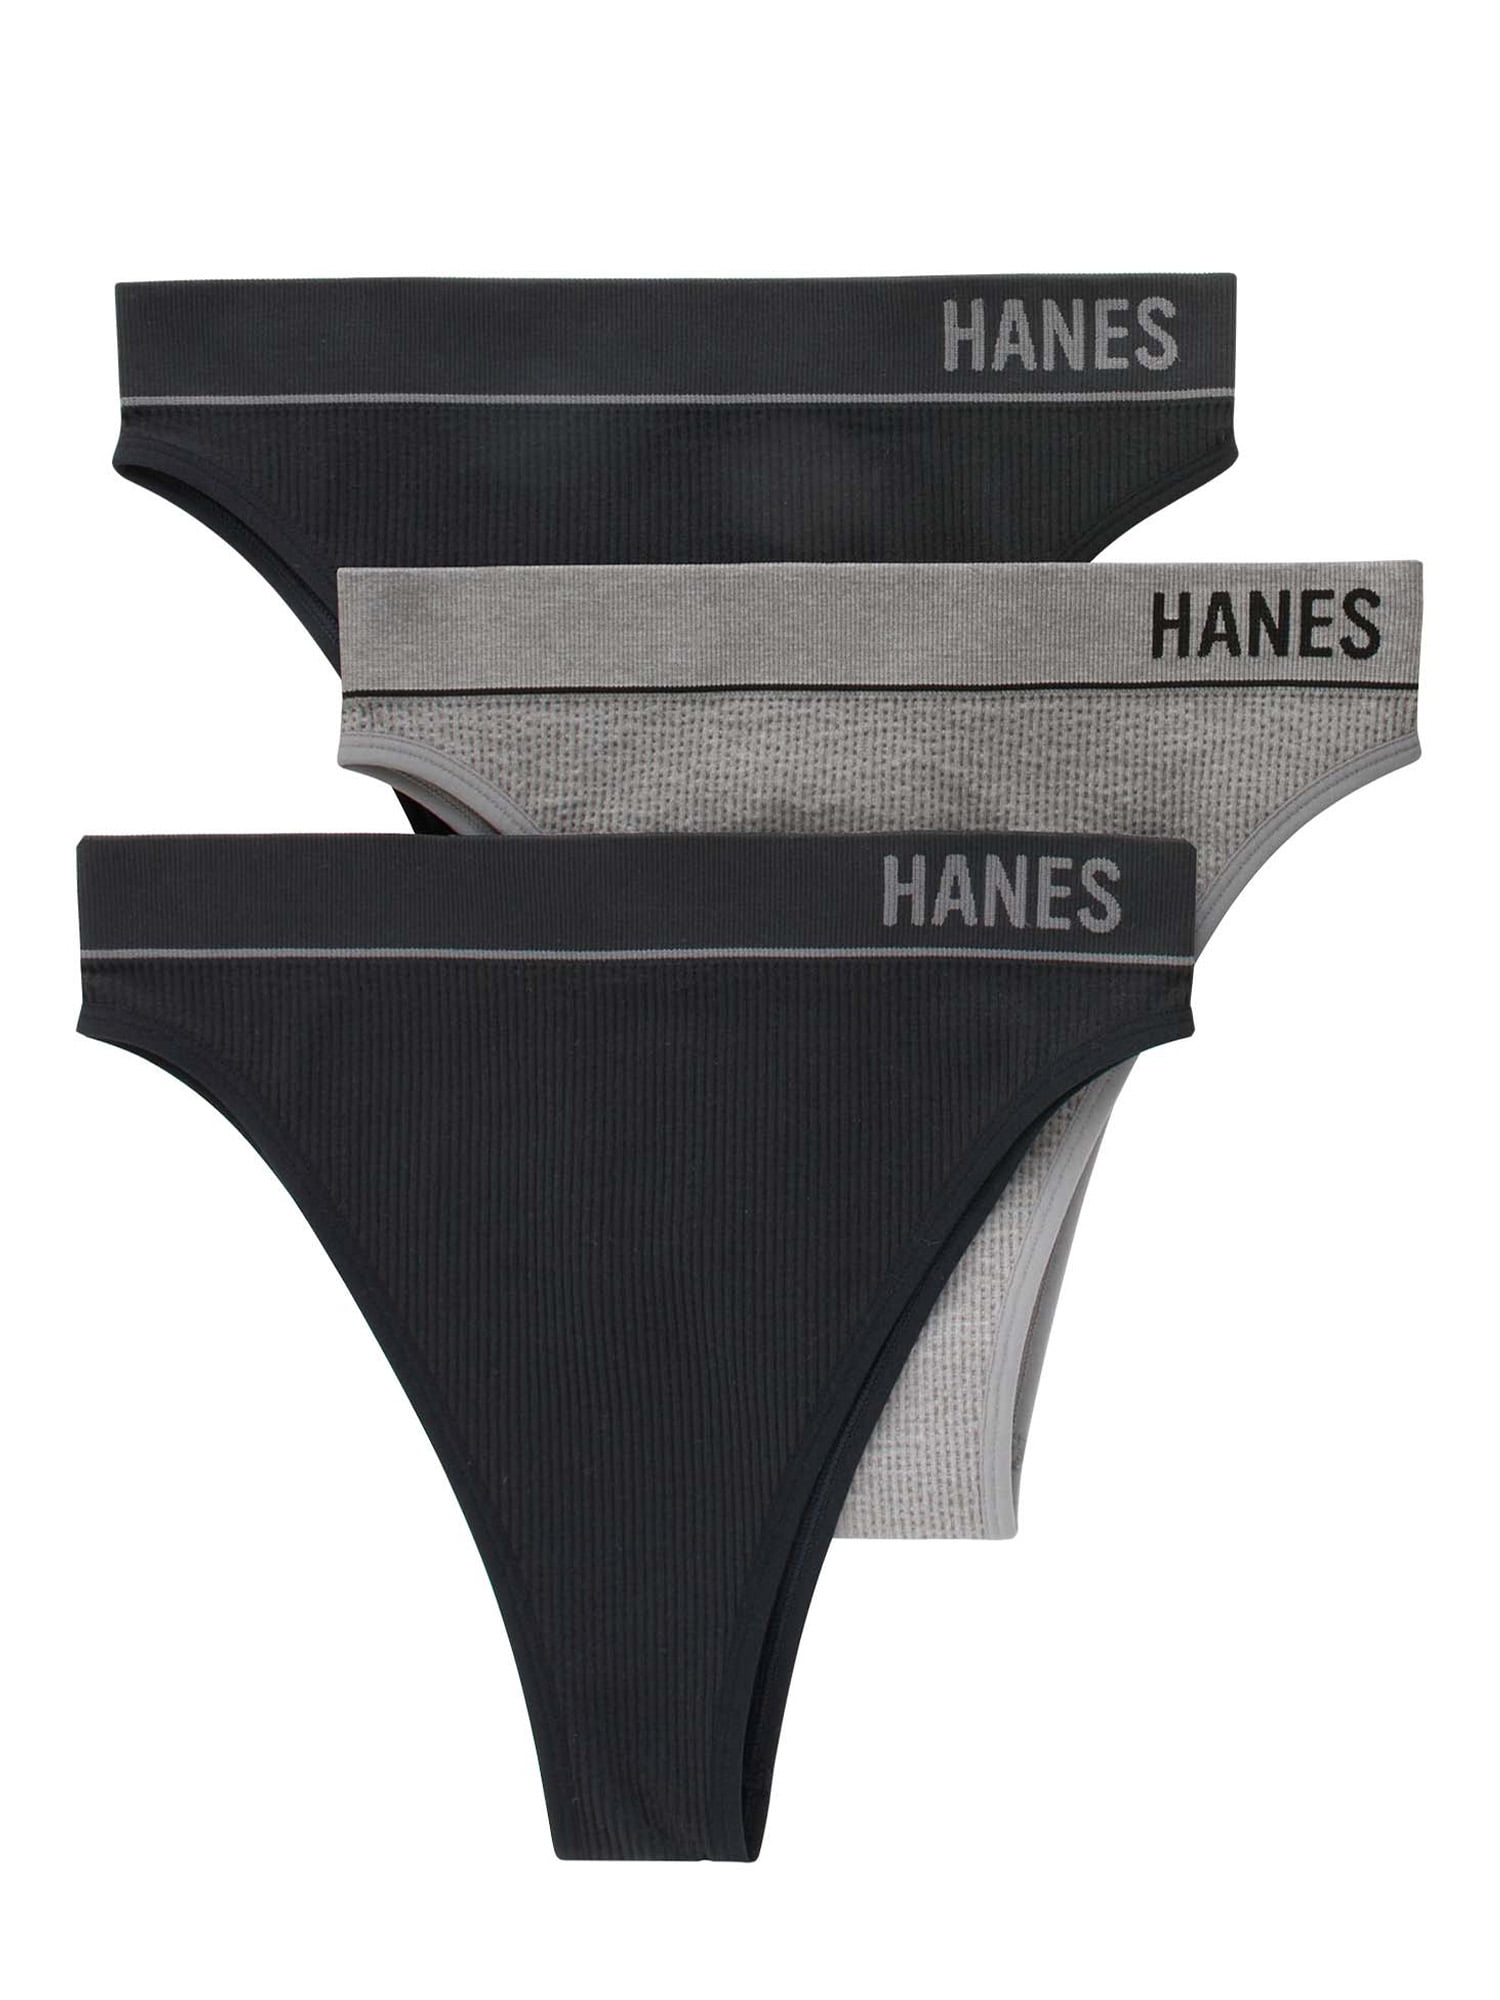 Hanes Ad: 68 listings